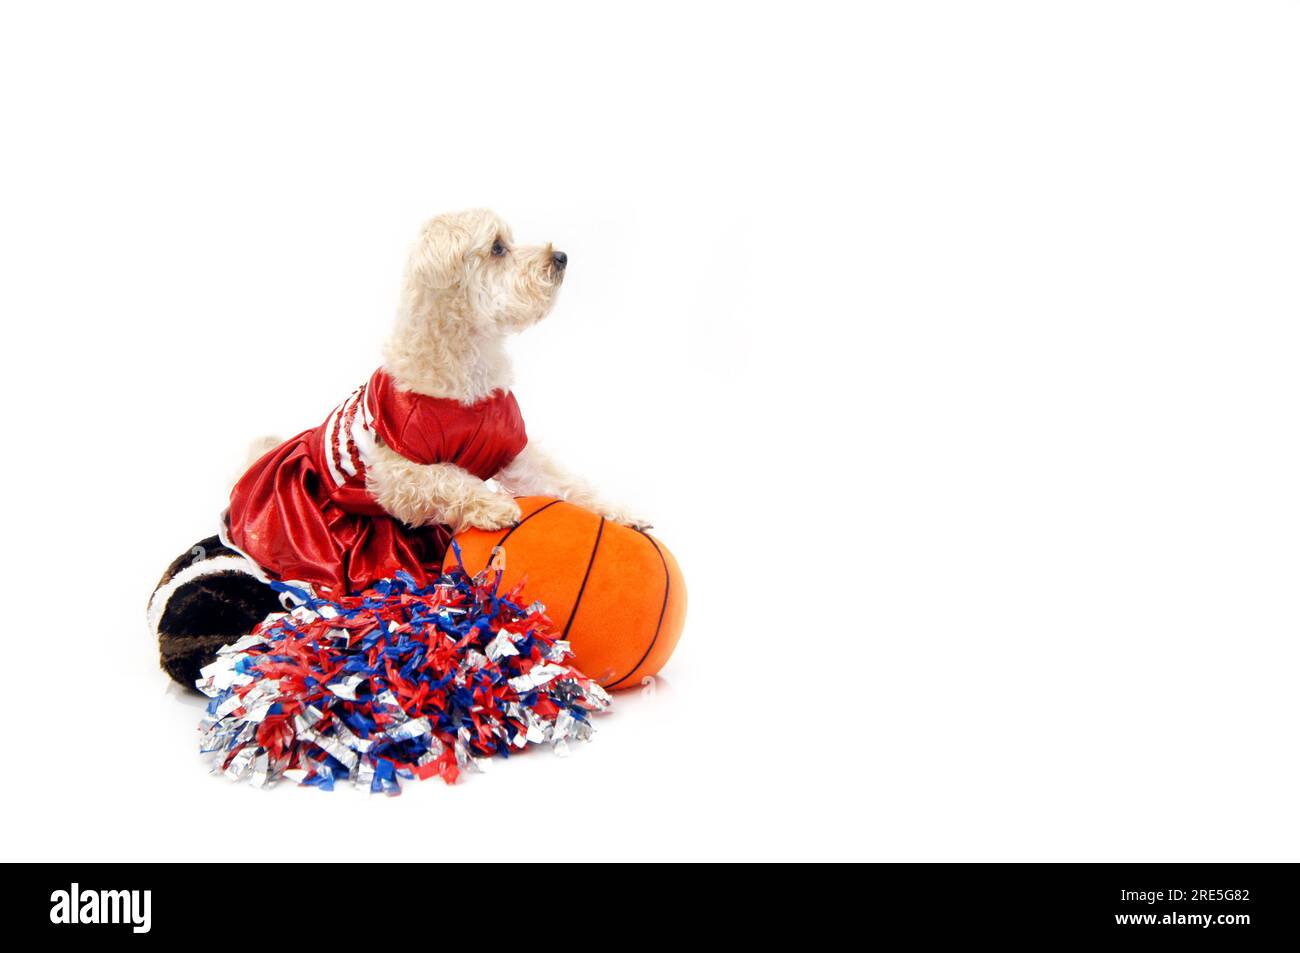 Poo setosa vestita in uniforme da cheerleader contiene pallacanestro arancio e si adatta a una pallacanestro farcita. Pom pom giacevano ai suoi piedi. Sta guardando Foto Stock